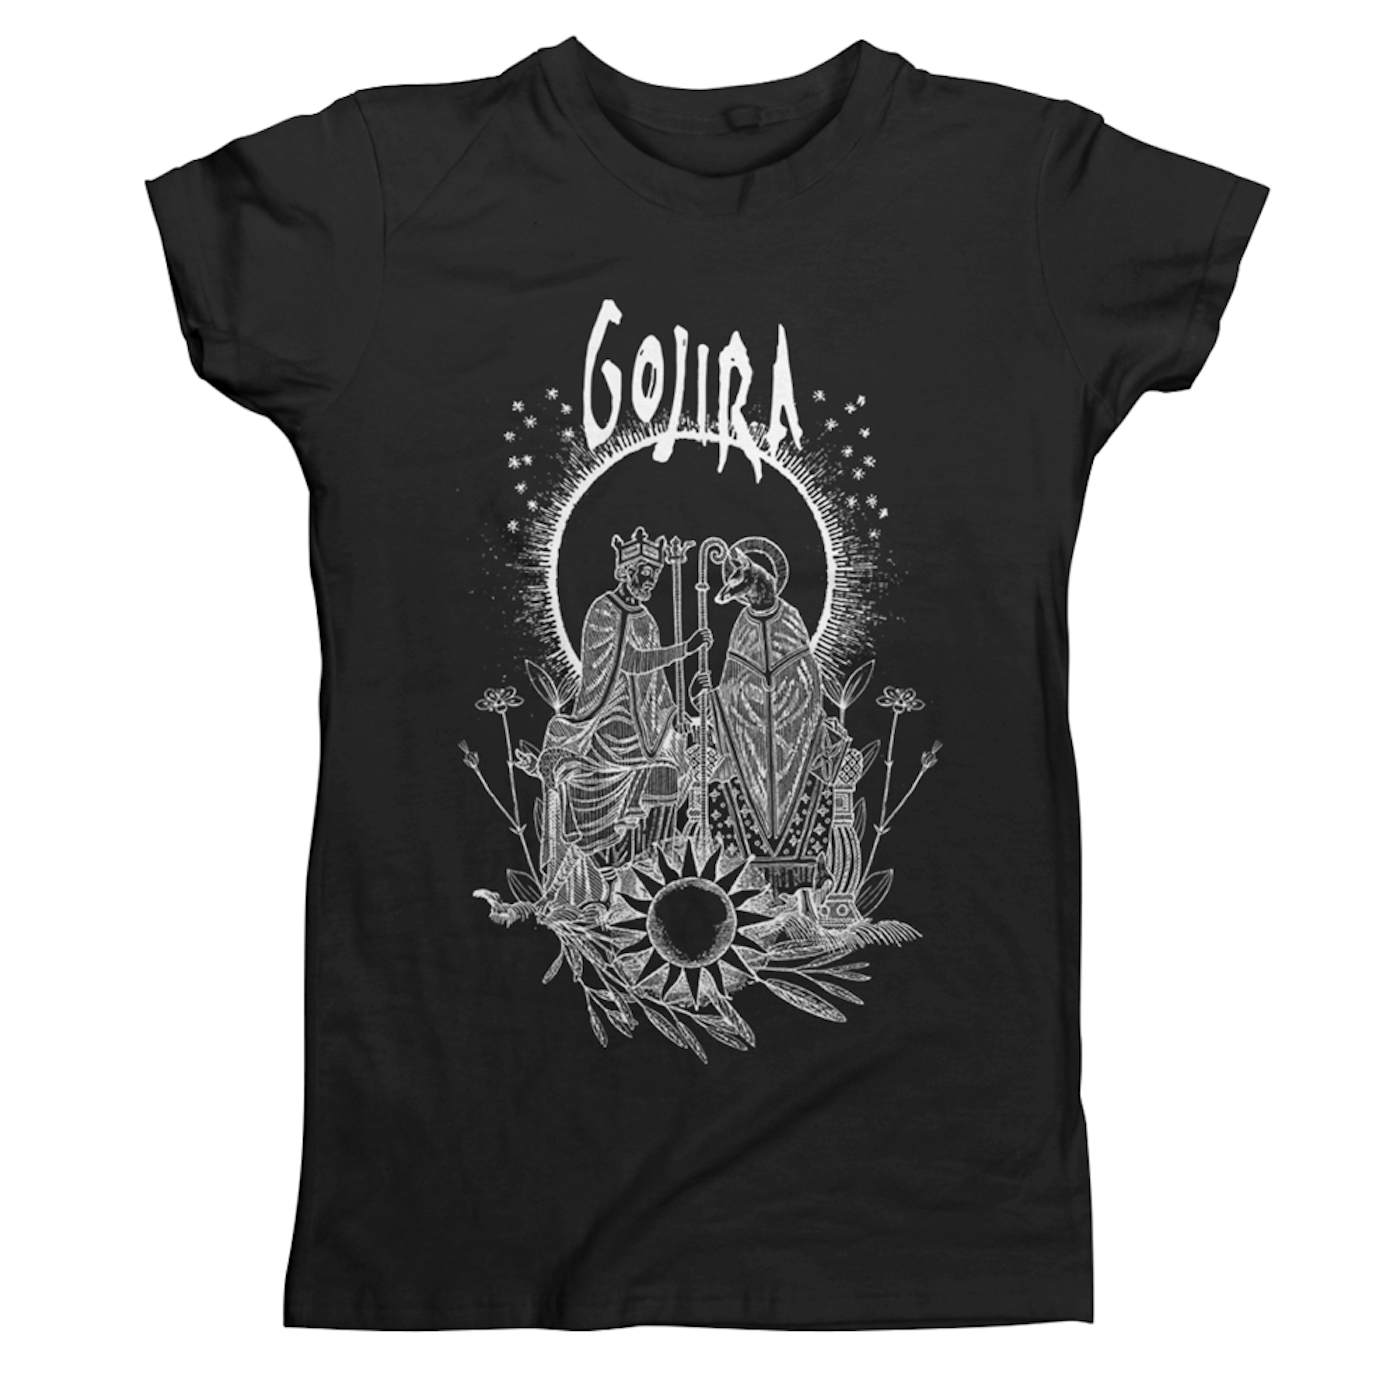 Gojira Ritual Union Women's T-Shirt